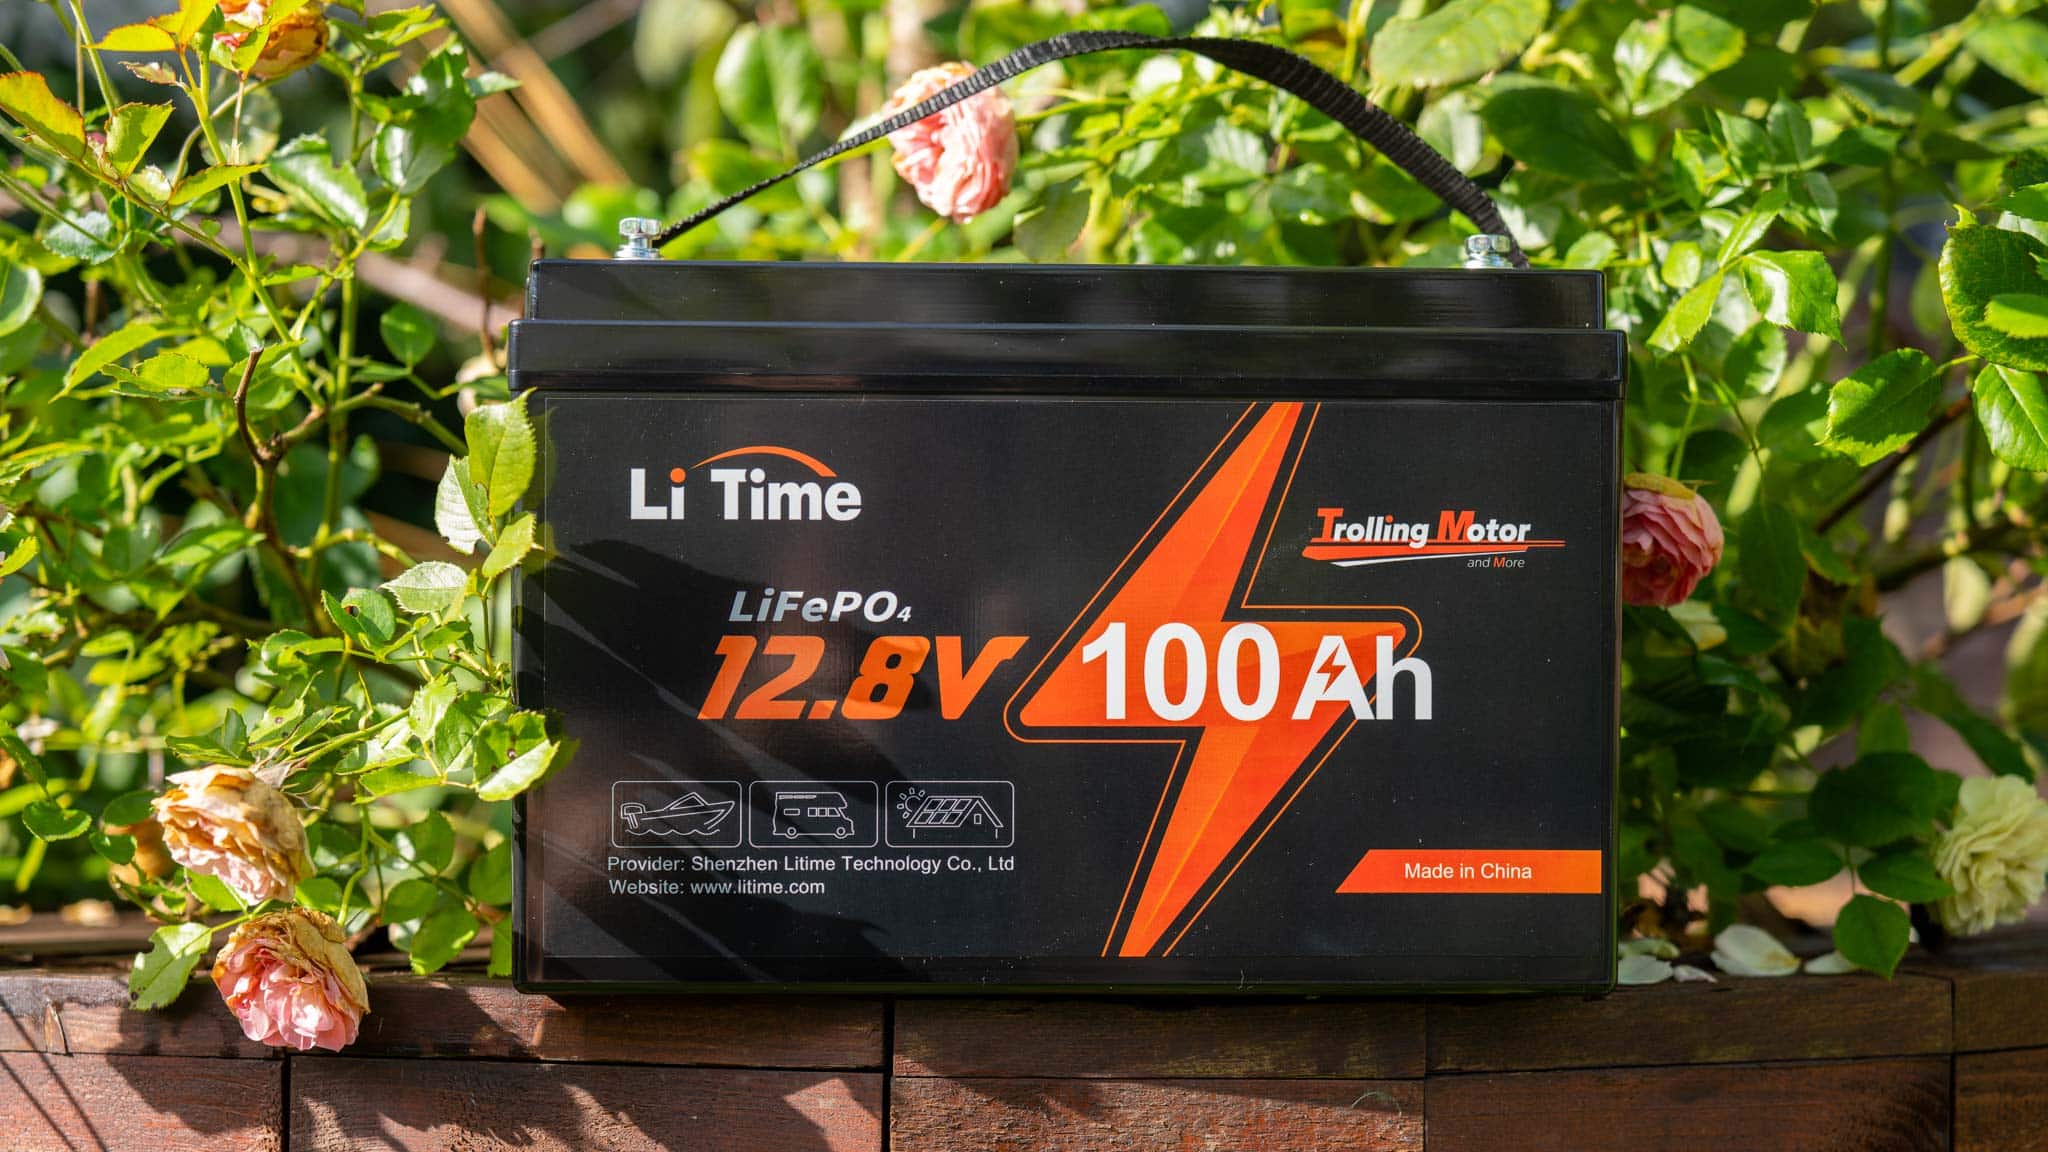 Der LiTime 12V 100Ah LiFePO4 Akku im Test, 100Ah für unter 400€! - Techtest